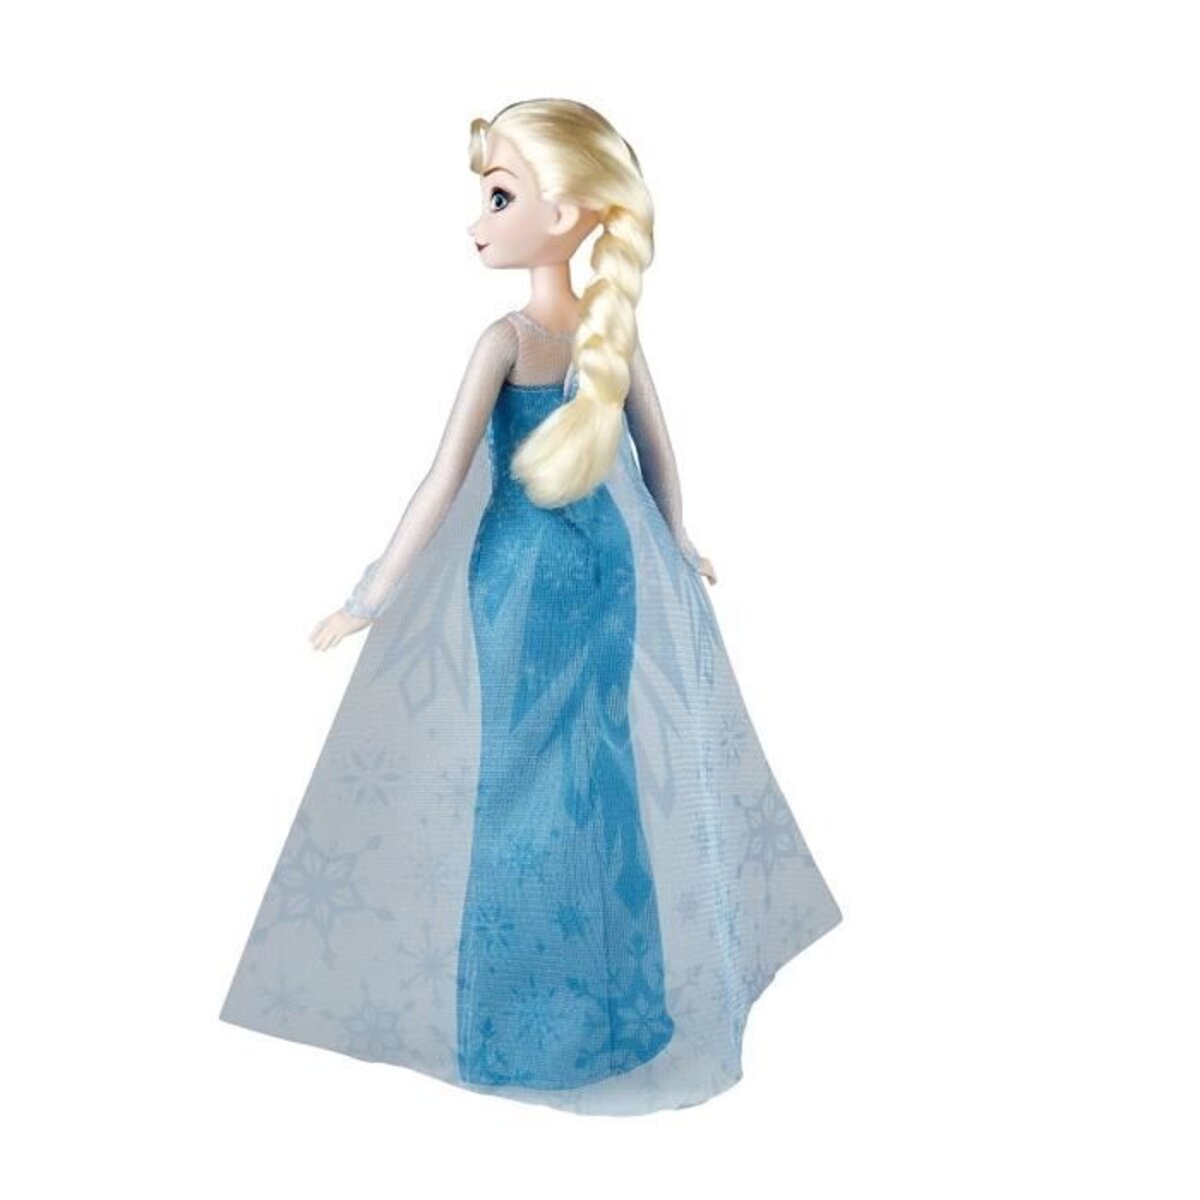 Disney la reine des neiges 2 - poupée elsa poussiere d'étoiles